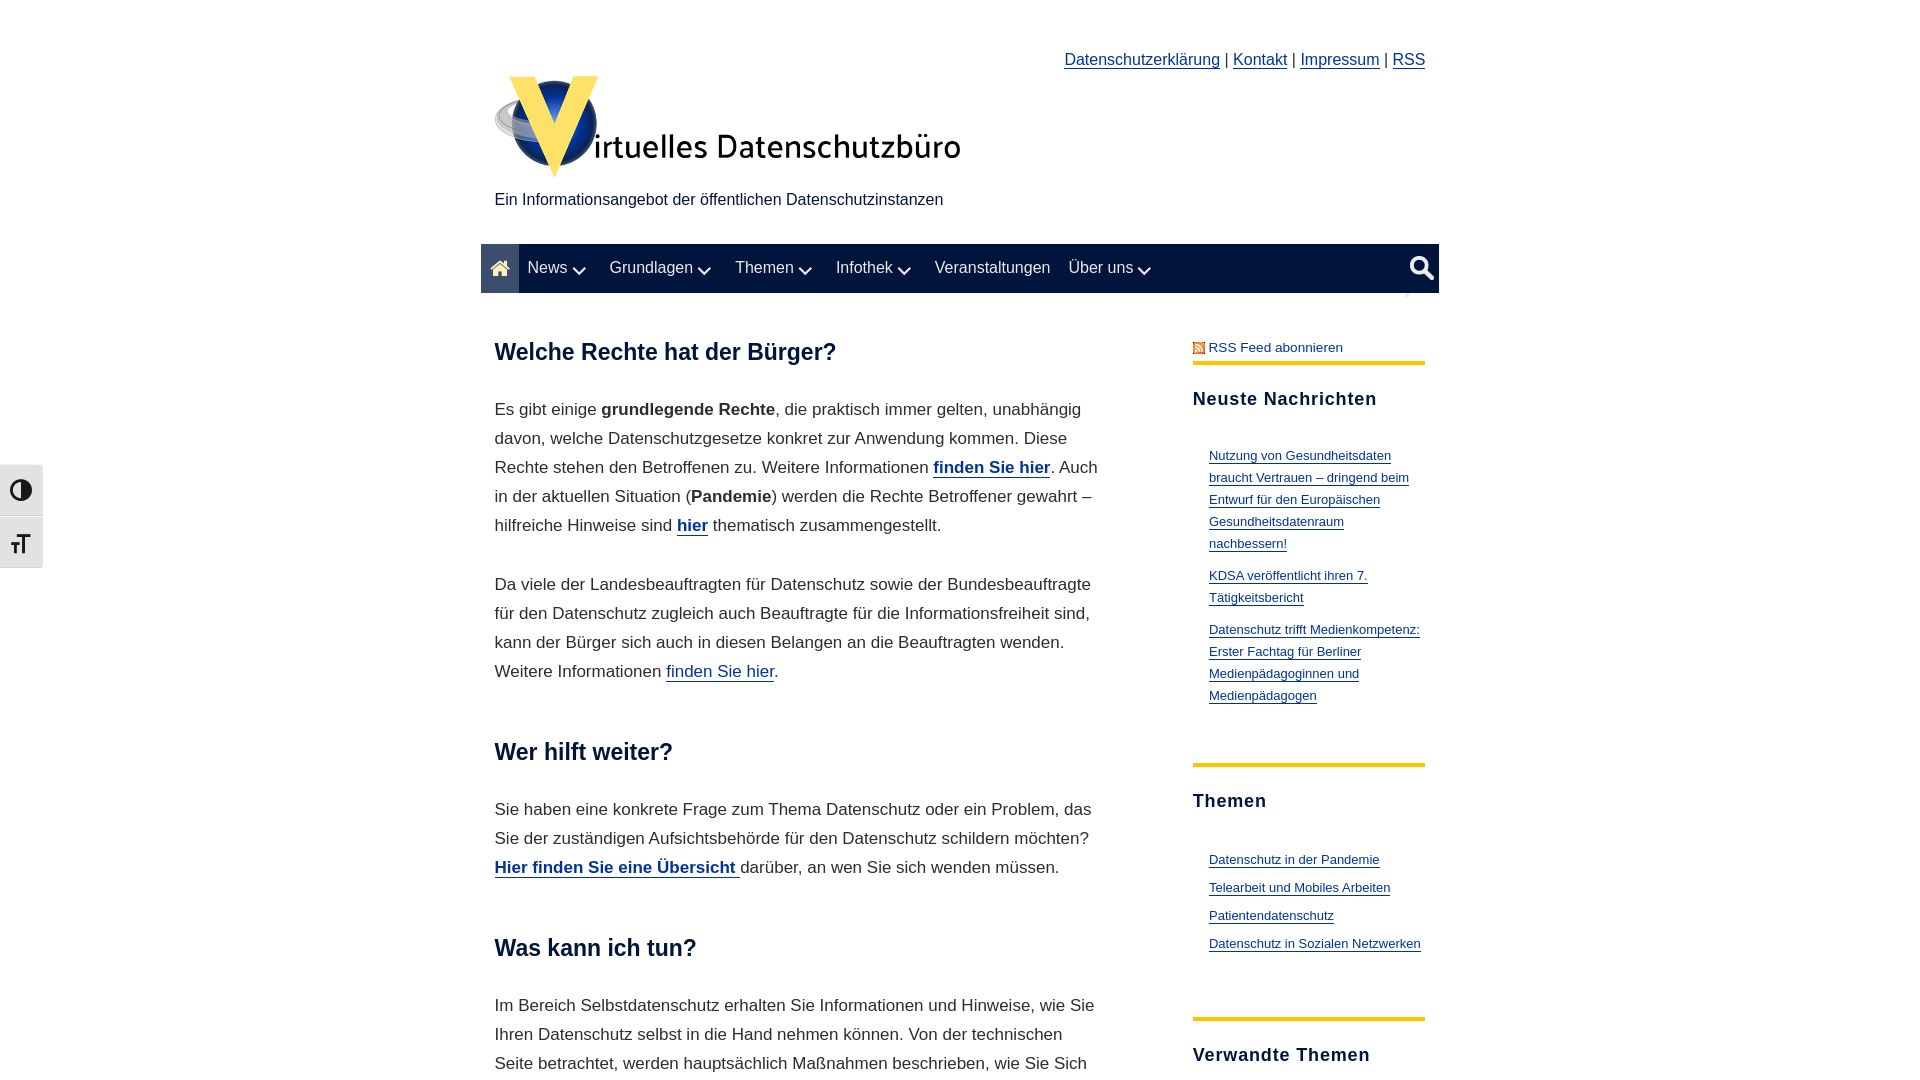 Webseitenstatus datenschutz.de ist   ONLINE